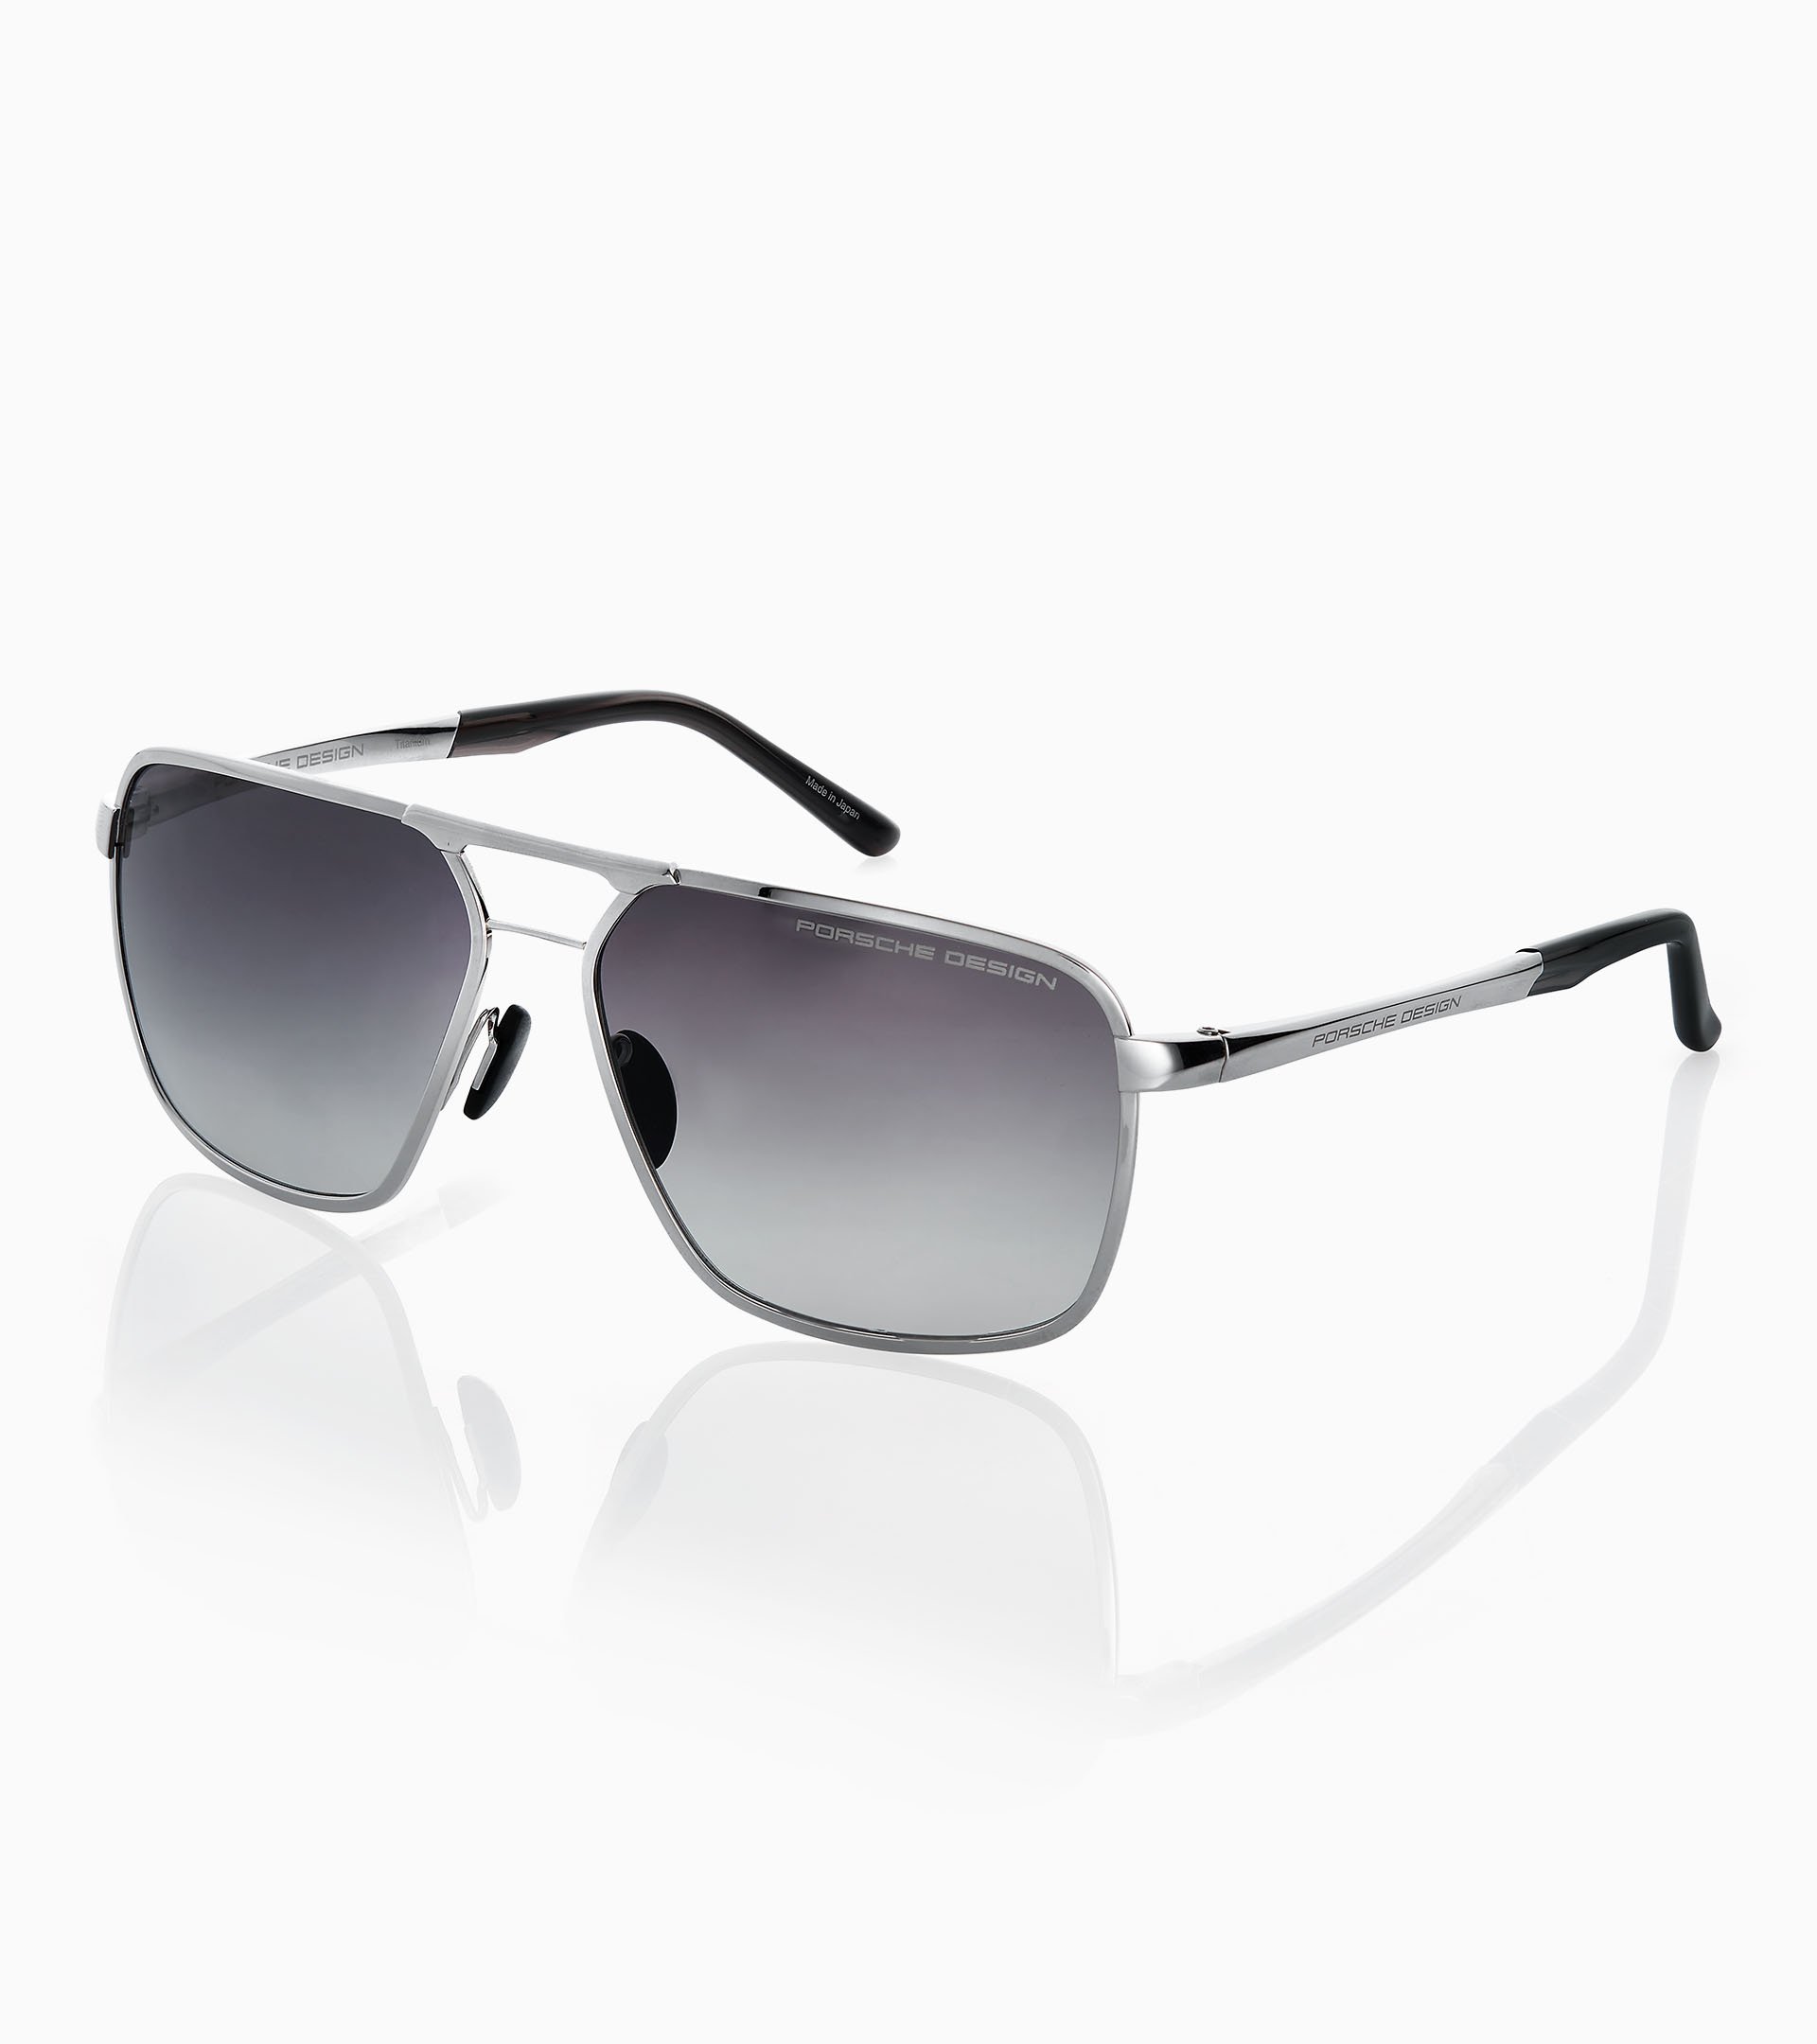 Sunglasses P´8966 - Square Sunglasses for Men | Porsche Design ...